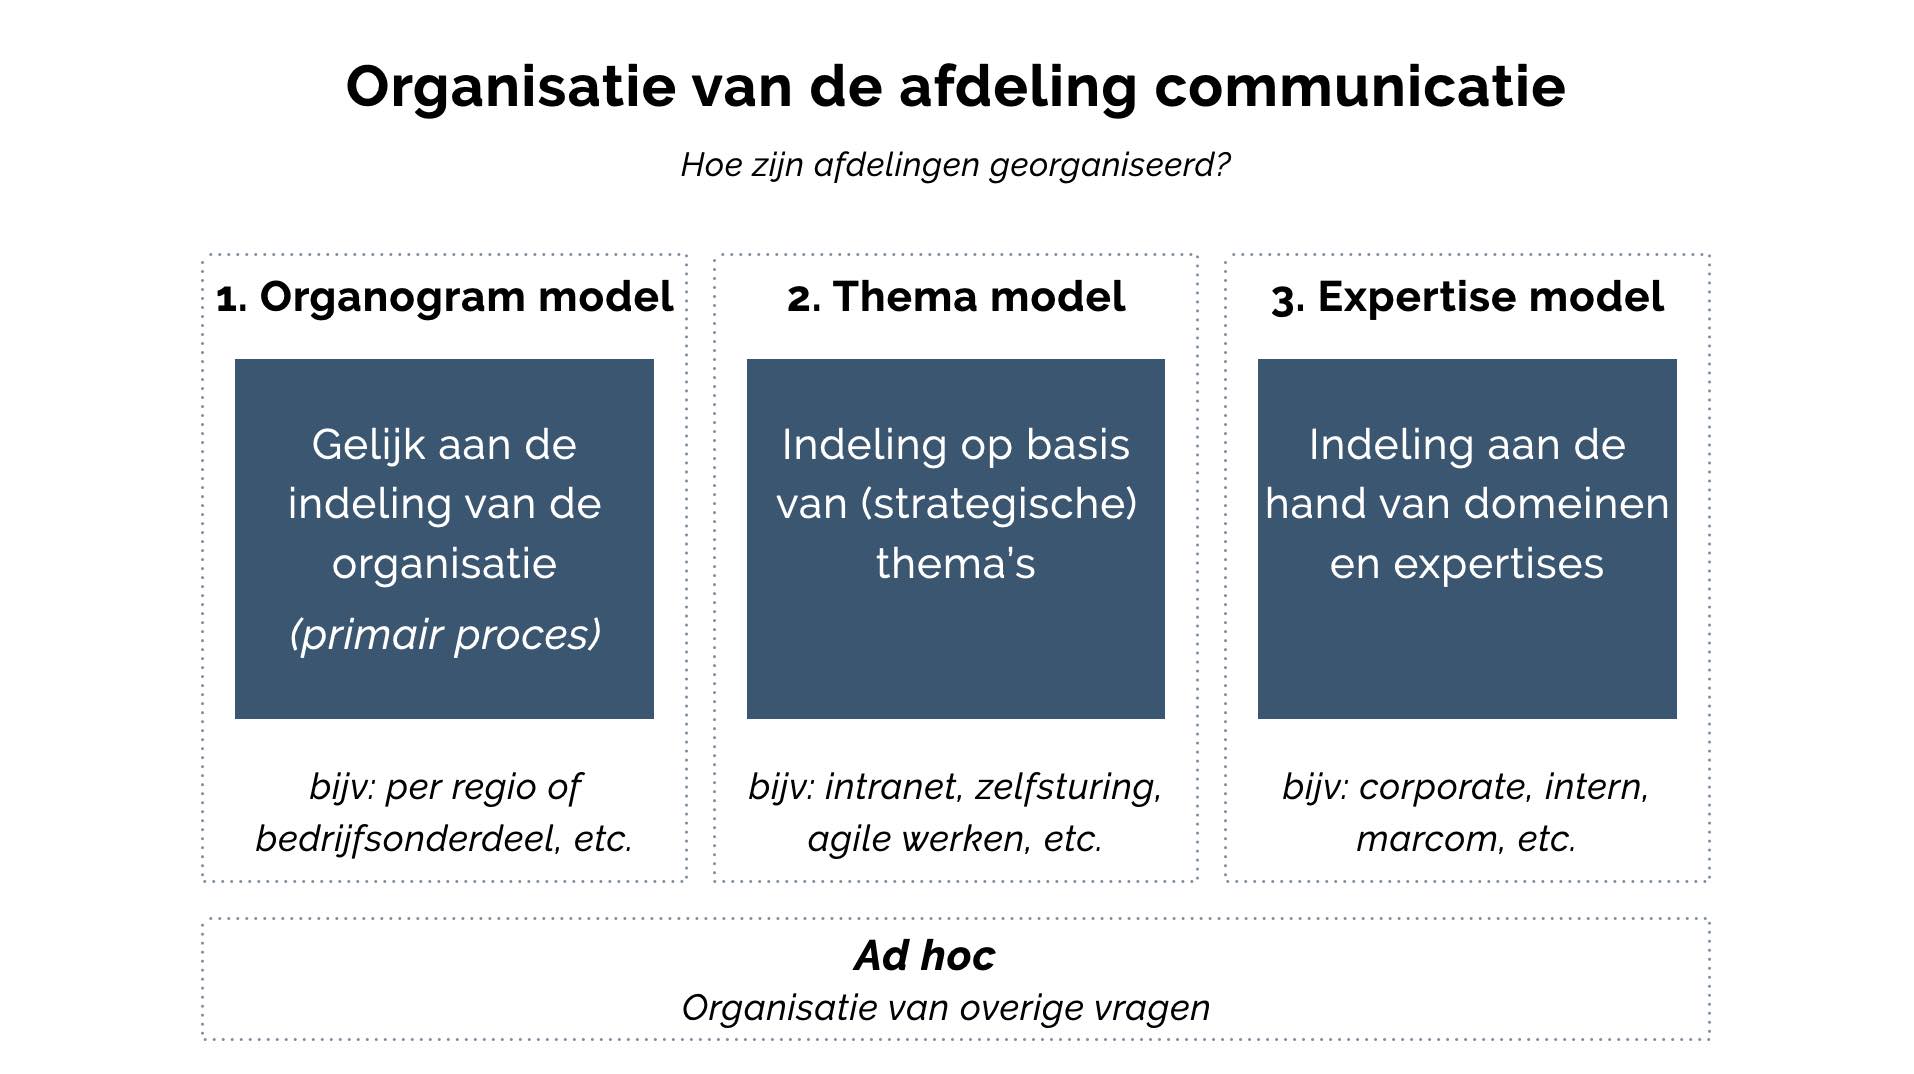 De organisatie van communicatie en afdelingen communicatie, modellen uit de praktijk